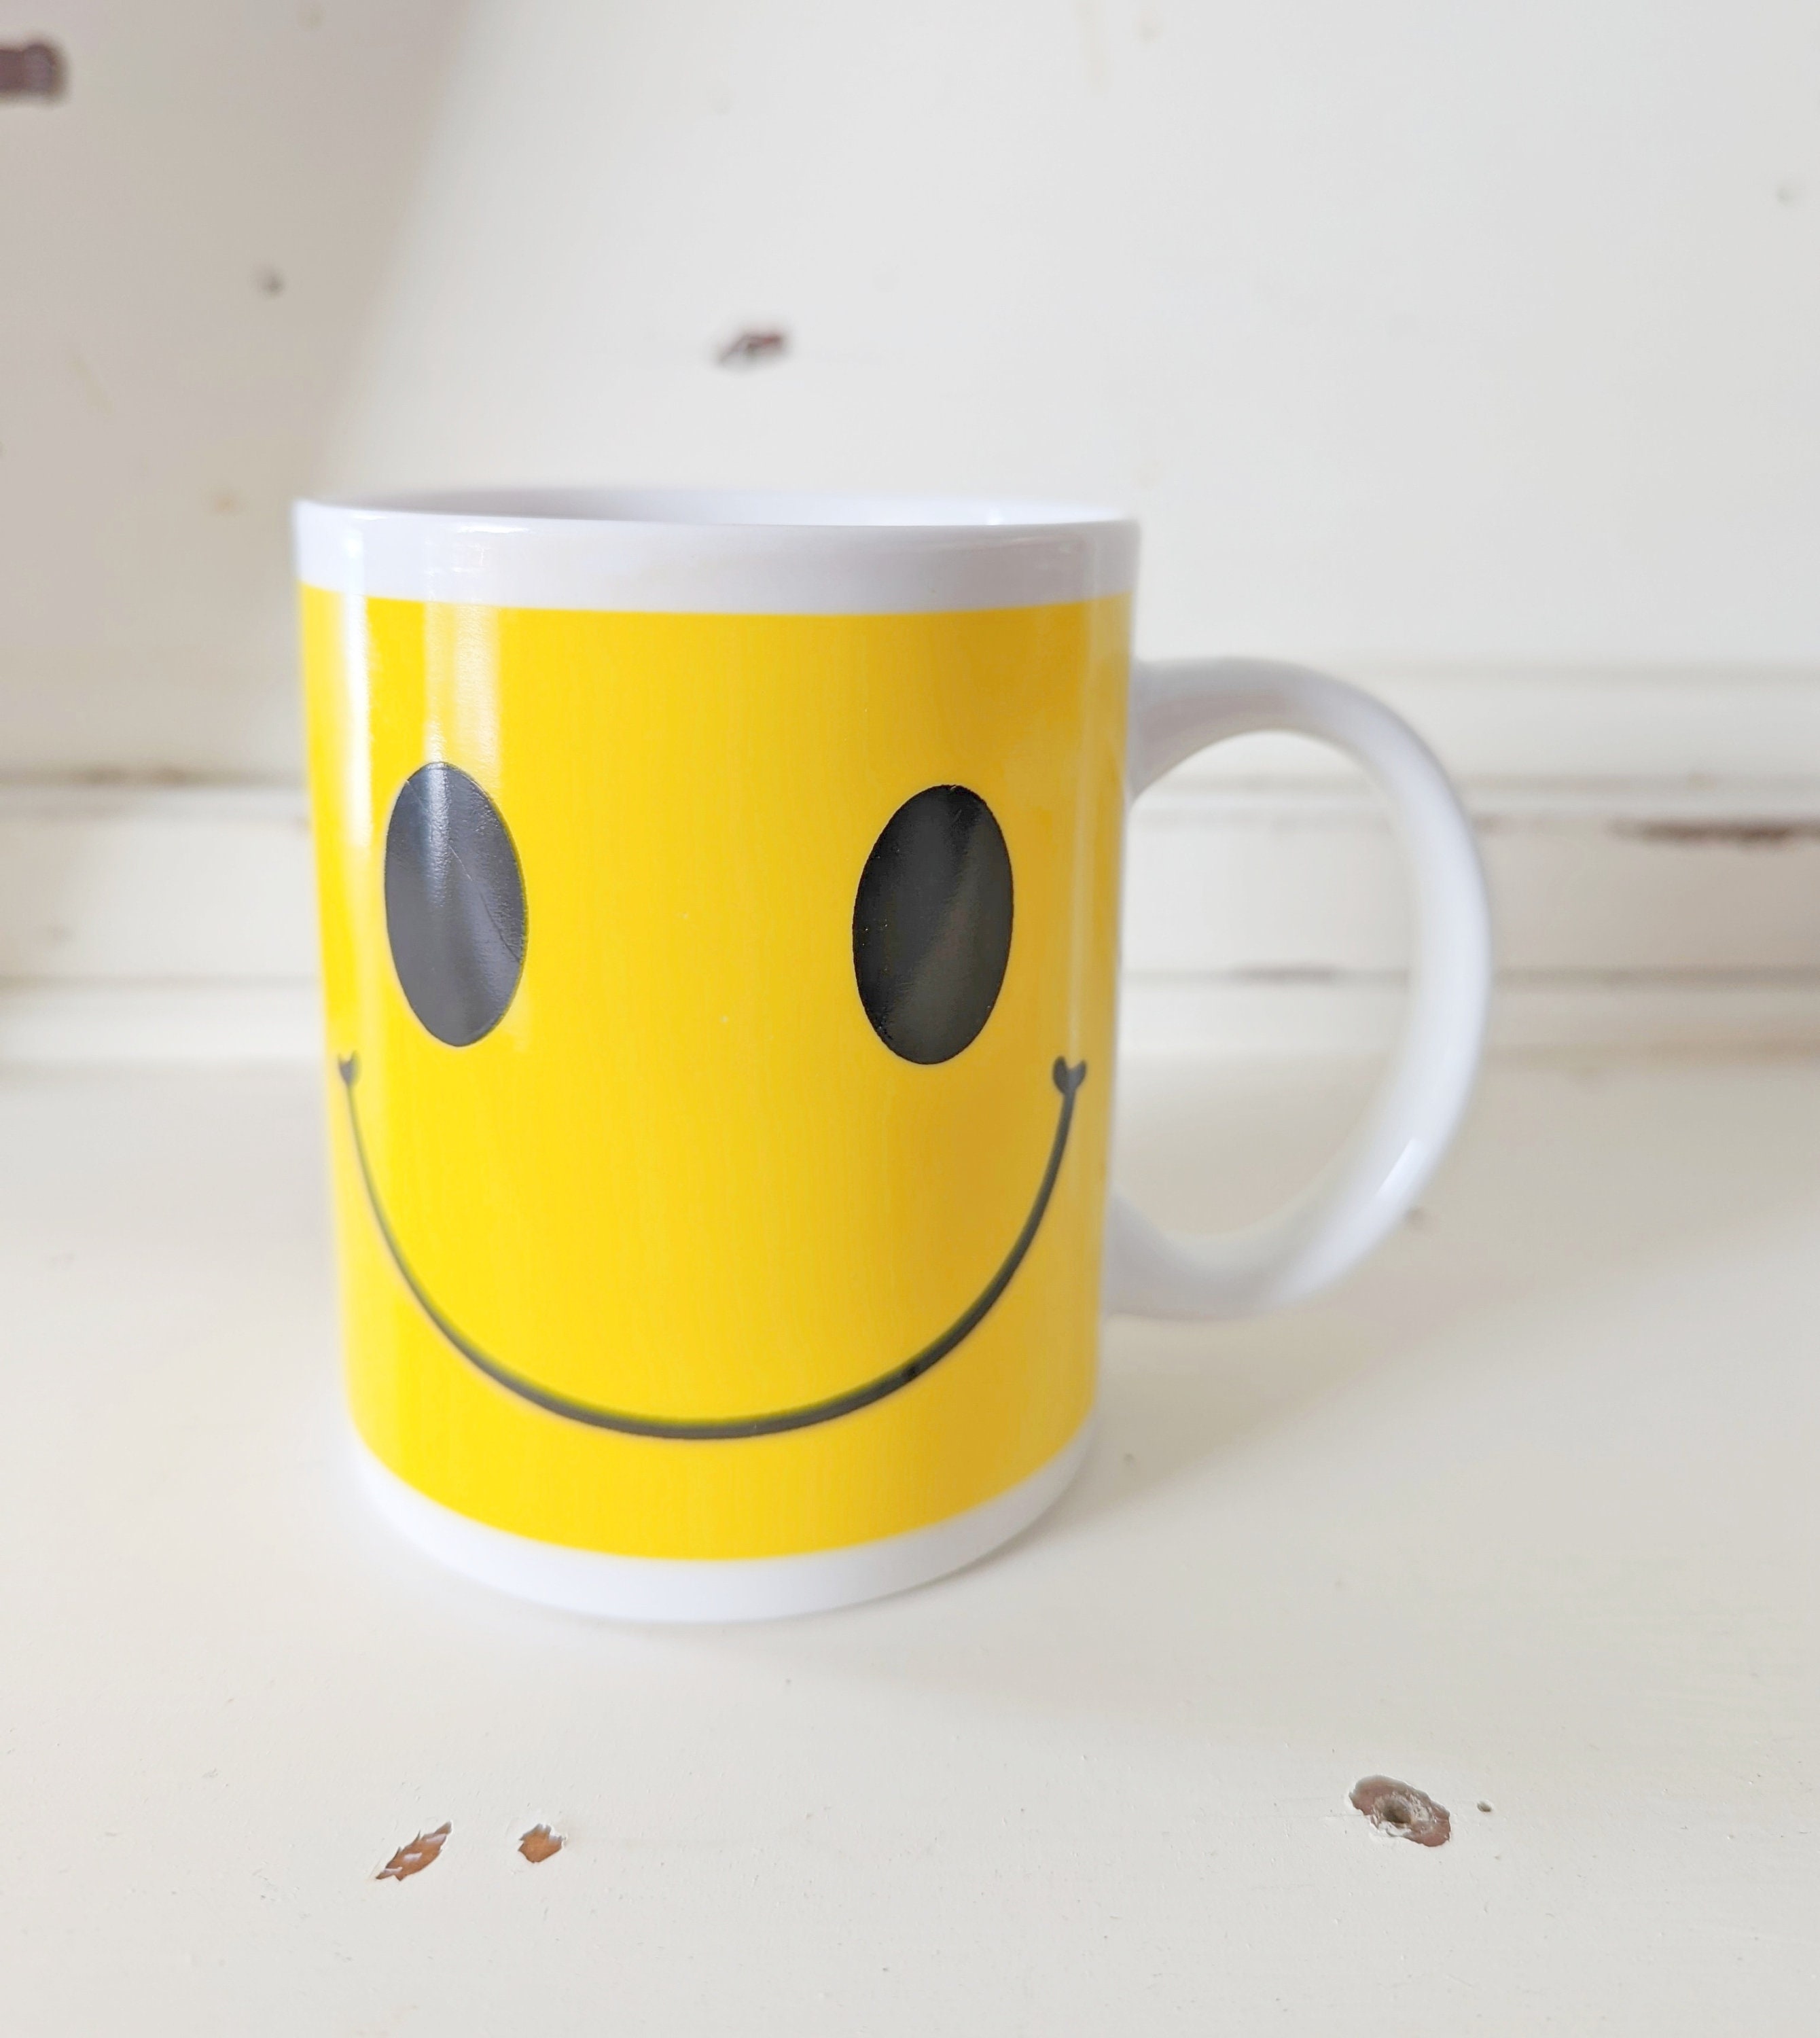 Smiley Just Woke Up Coffee Mug Aesthetic Tea & Coffee Mugs